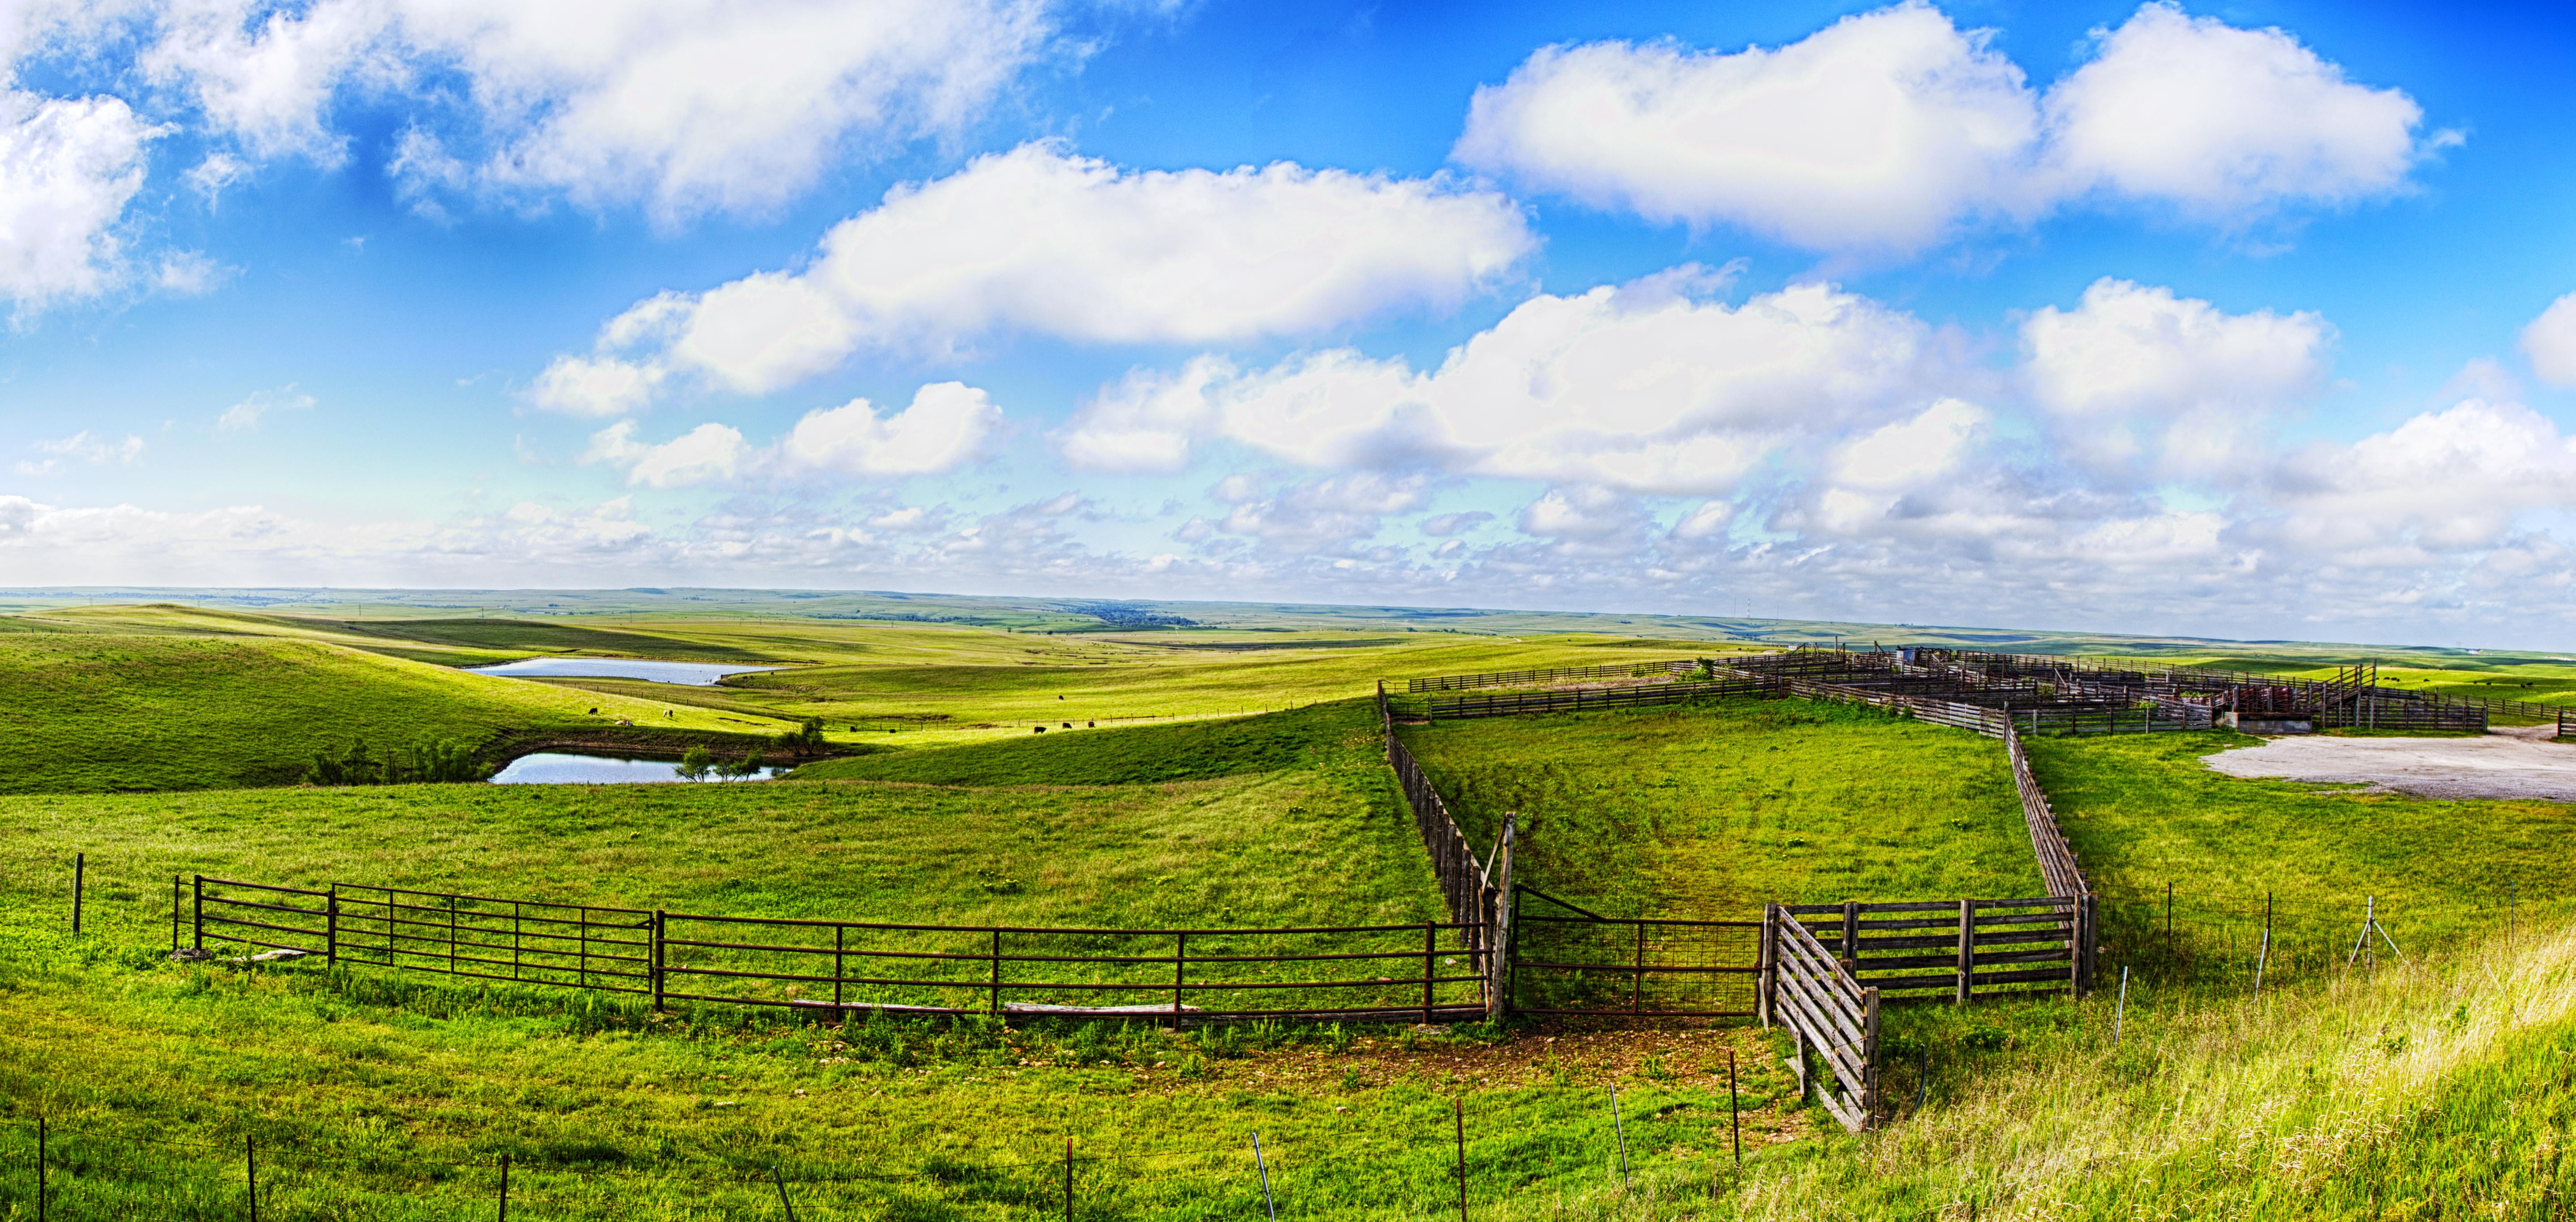 green grass field under white clouds and blue sky during daytime, flint hills, flint hills